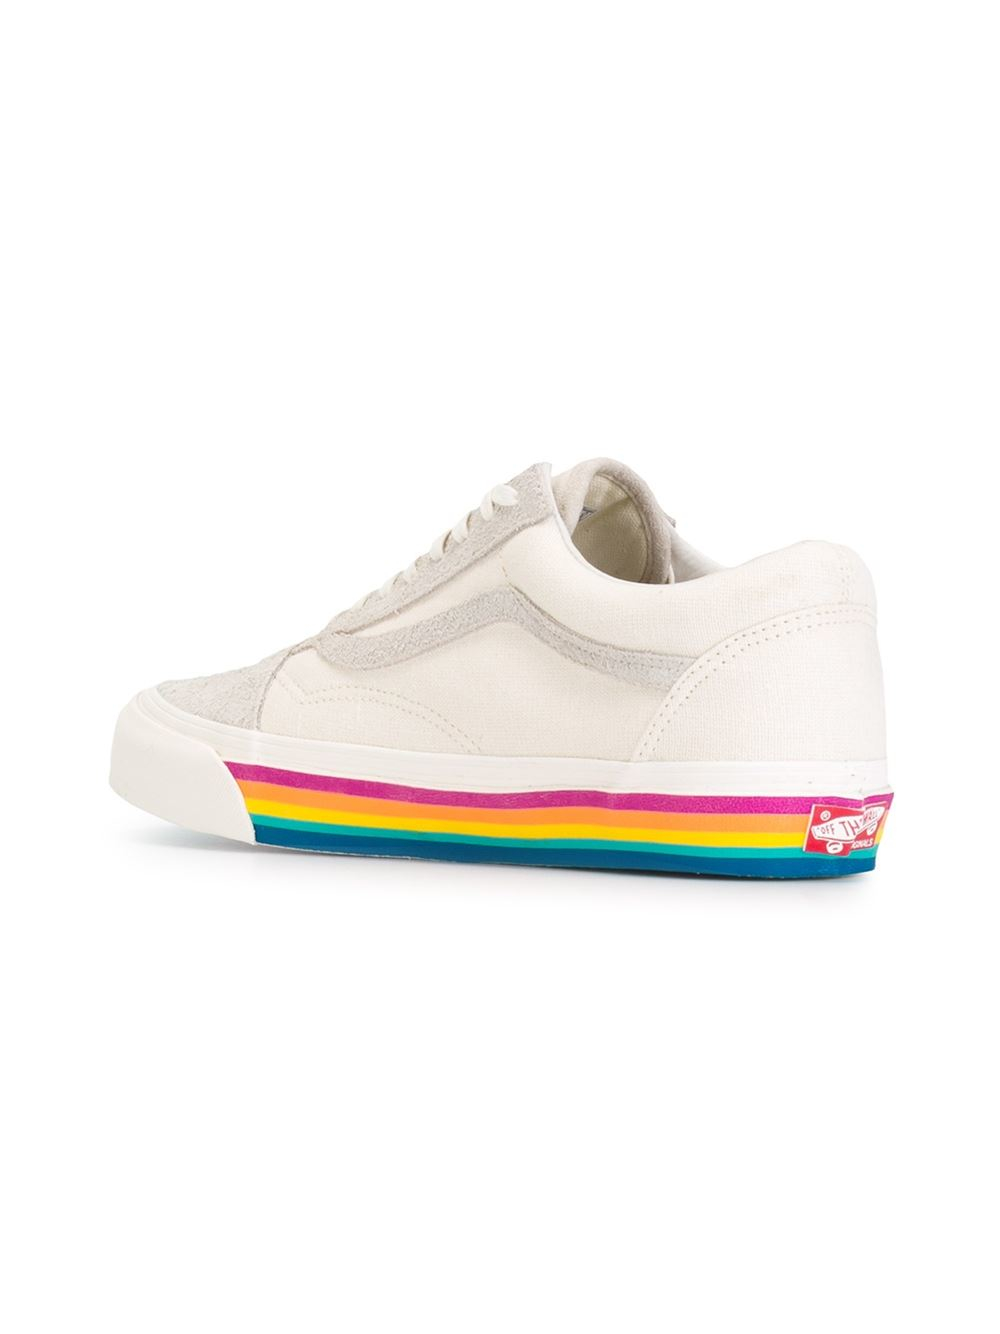 vans rainbow soles